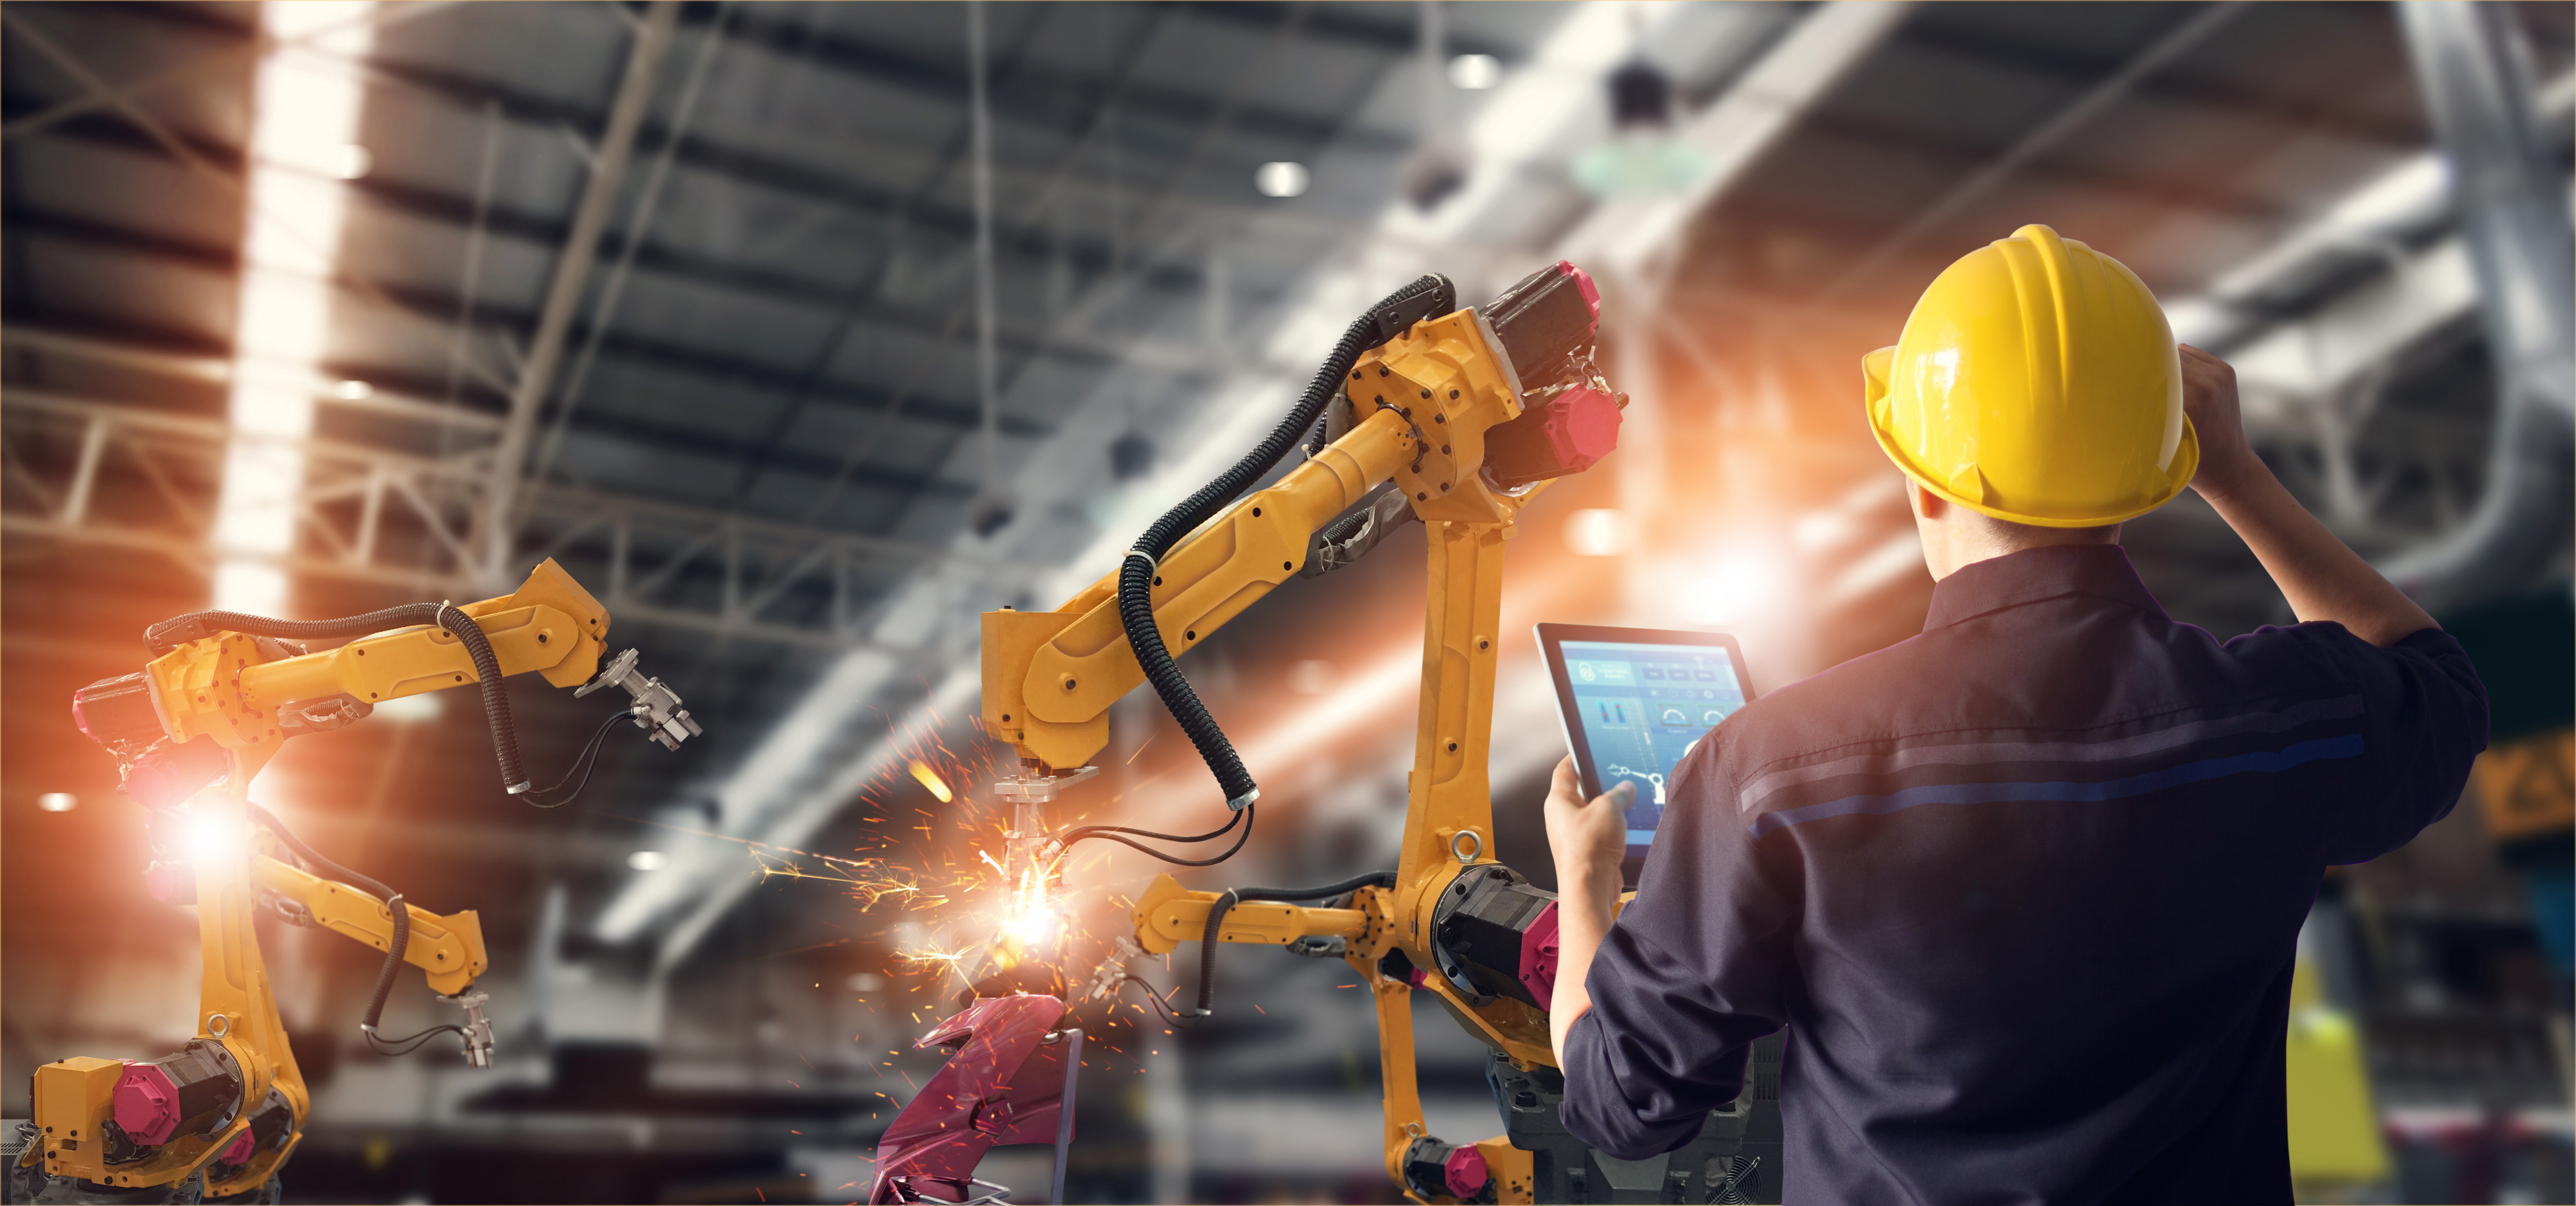 automatisierte Fertigungsanlage mit orangenen Roboterarmen und einem Arbeiter